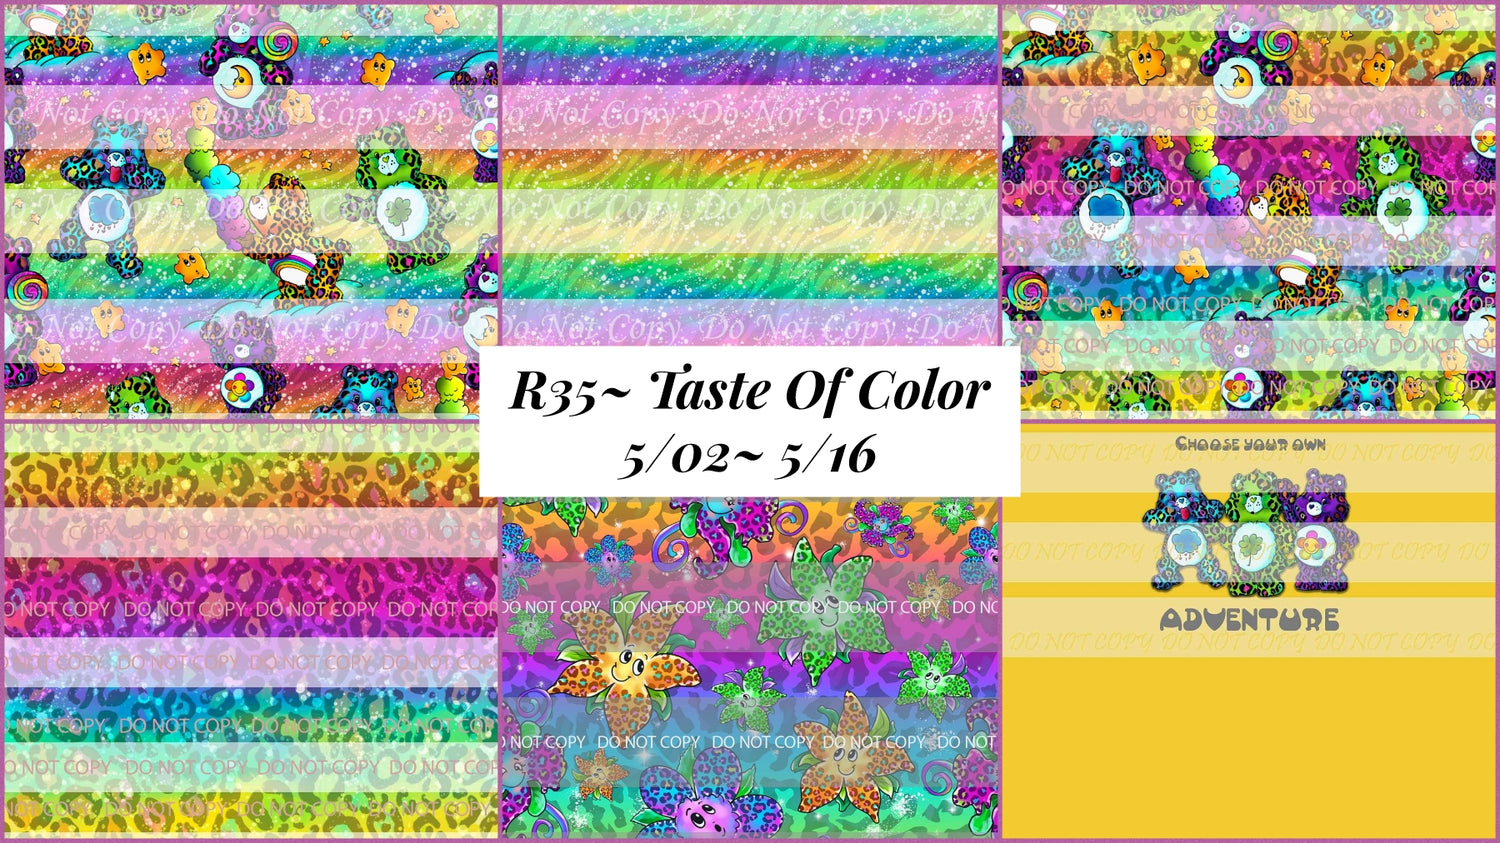 Preorder R35 Taste Of Colors